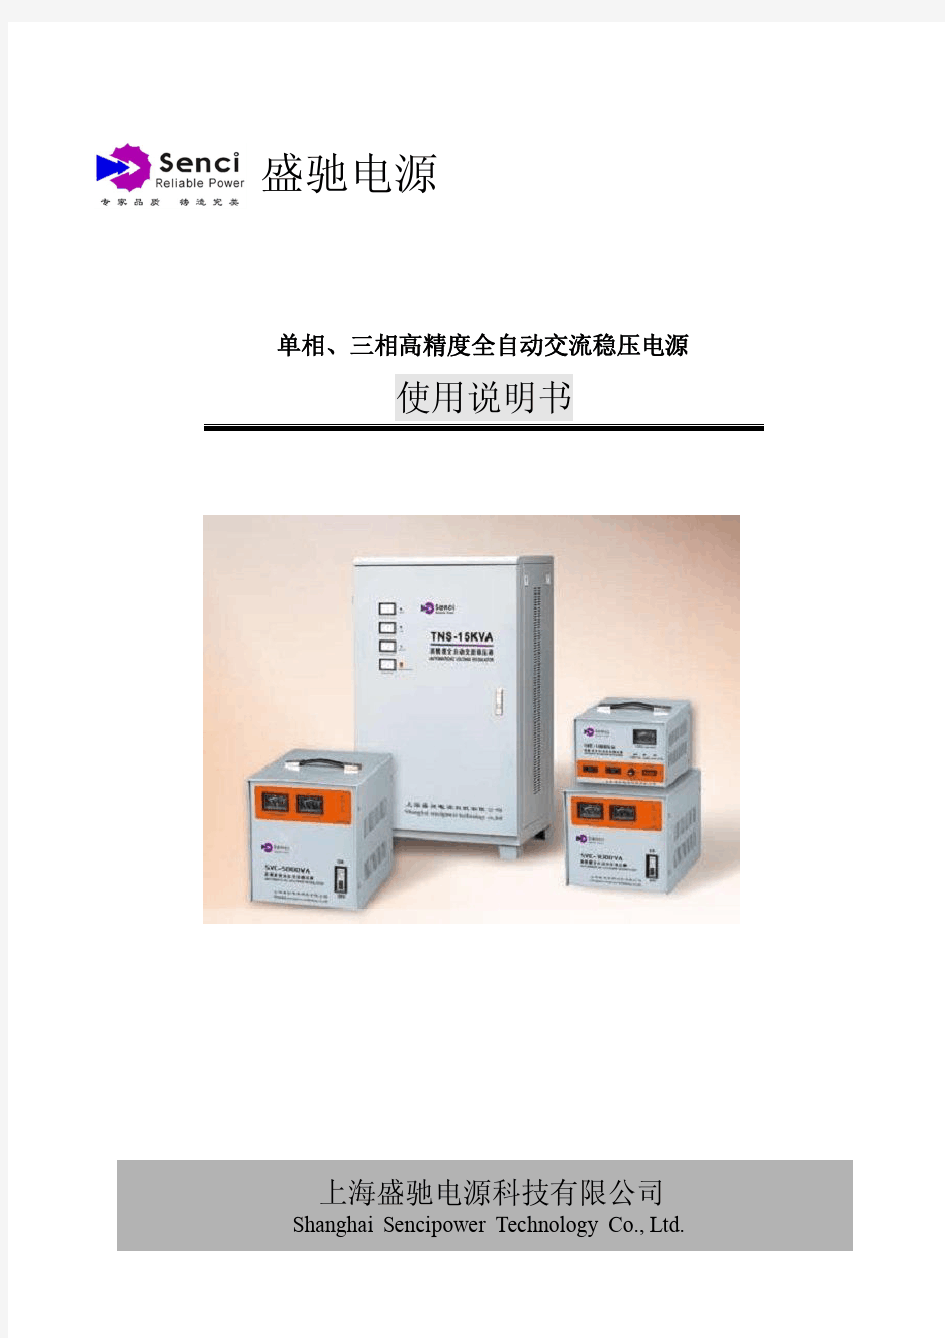 盛驰电源 全自动高精度稳压器使用说明书(中文版)